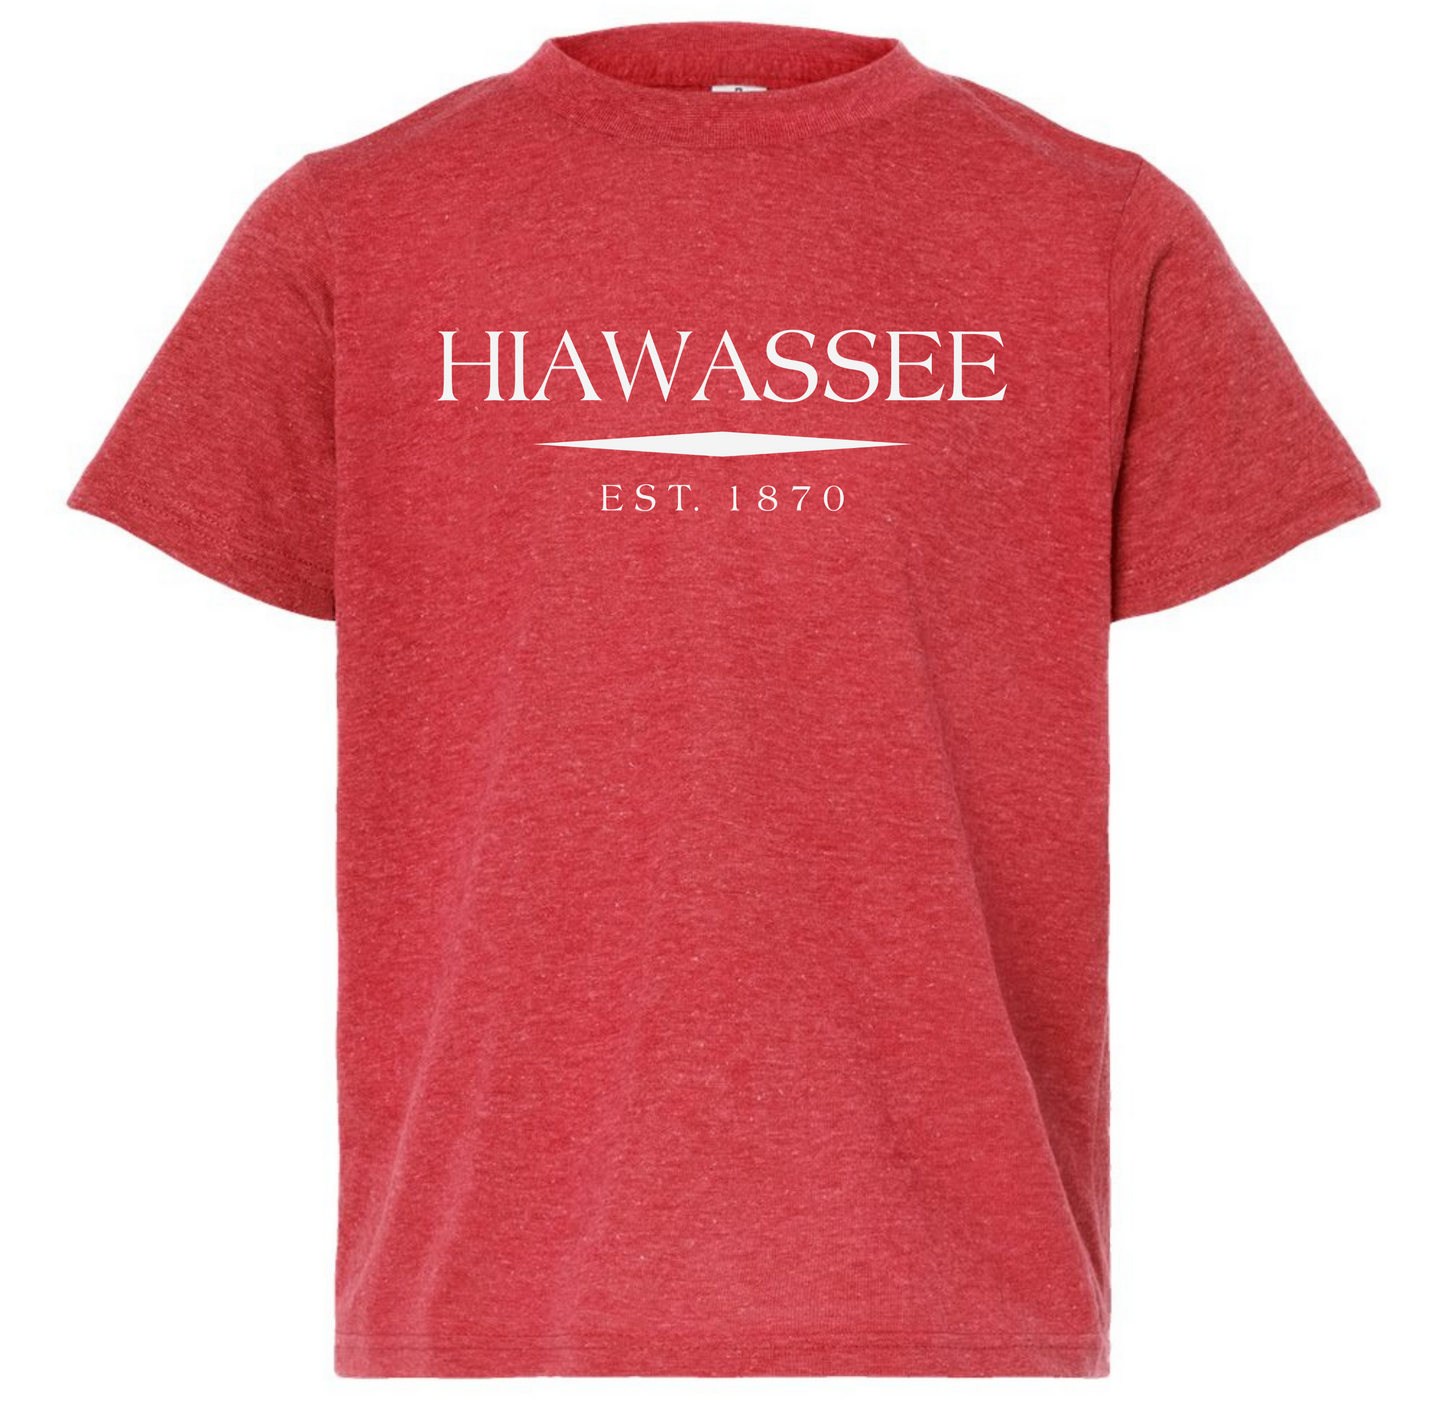 Hiawassee T-Shirt